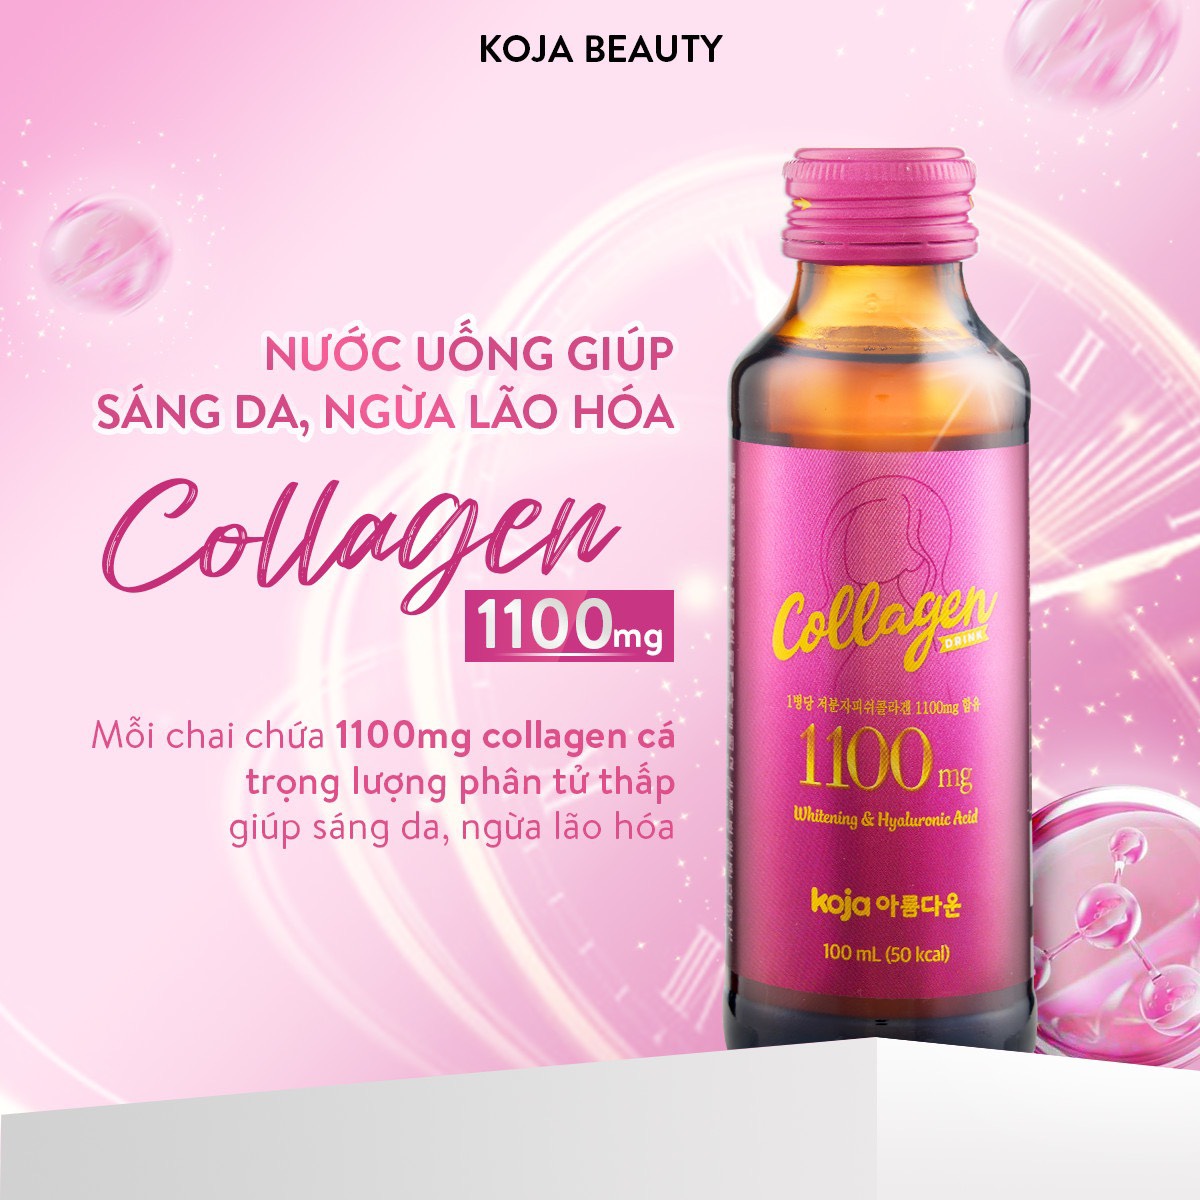 Nước uống bổ sung Collagen Koja Beauty nhập khẩu chính ngạch từ Hàn Quốc